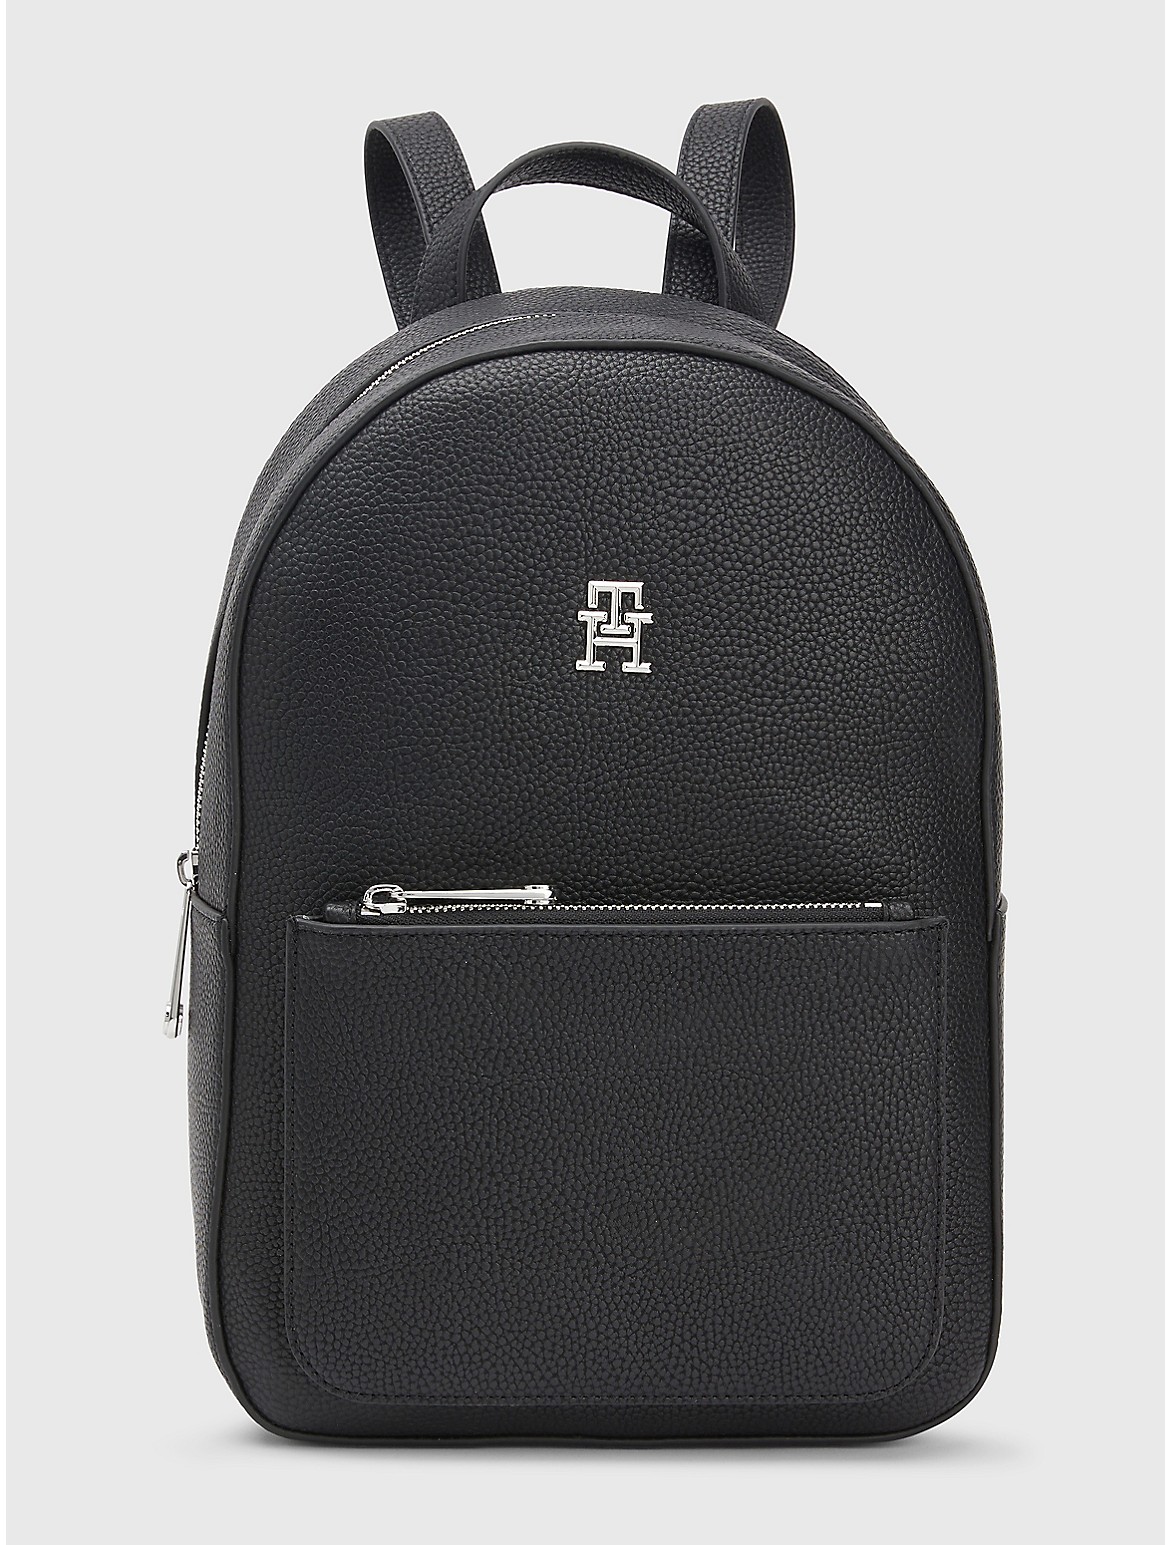 Tommy Hilfiger Women's Textured Logo Backpack - Black